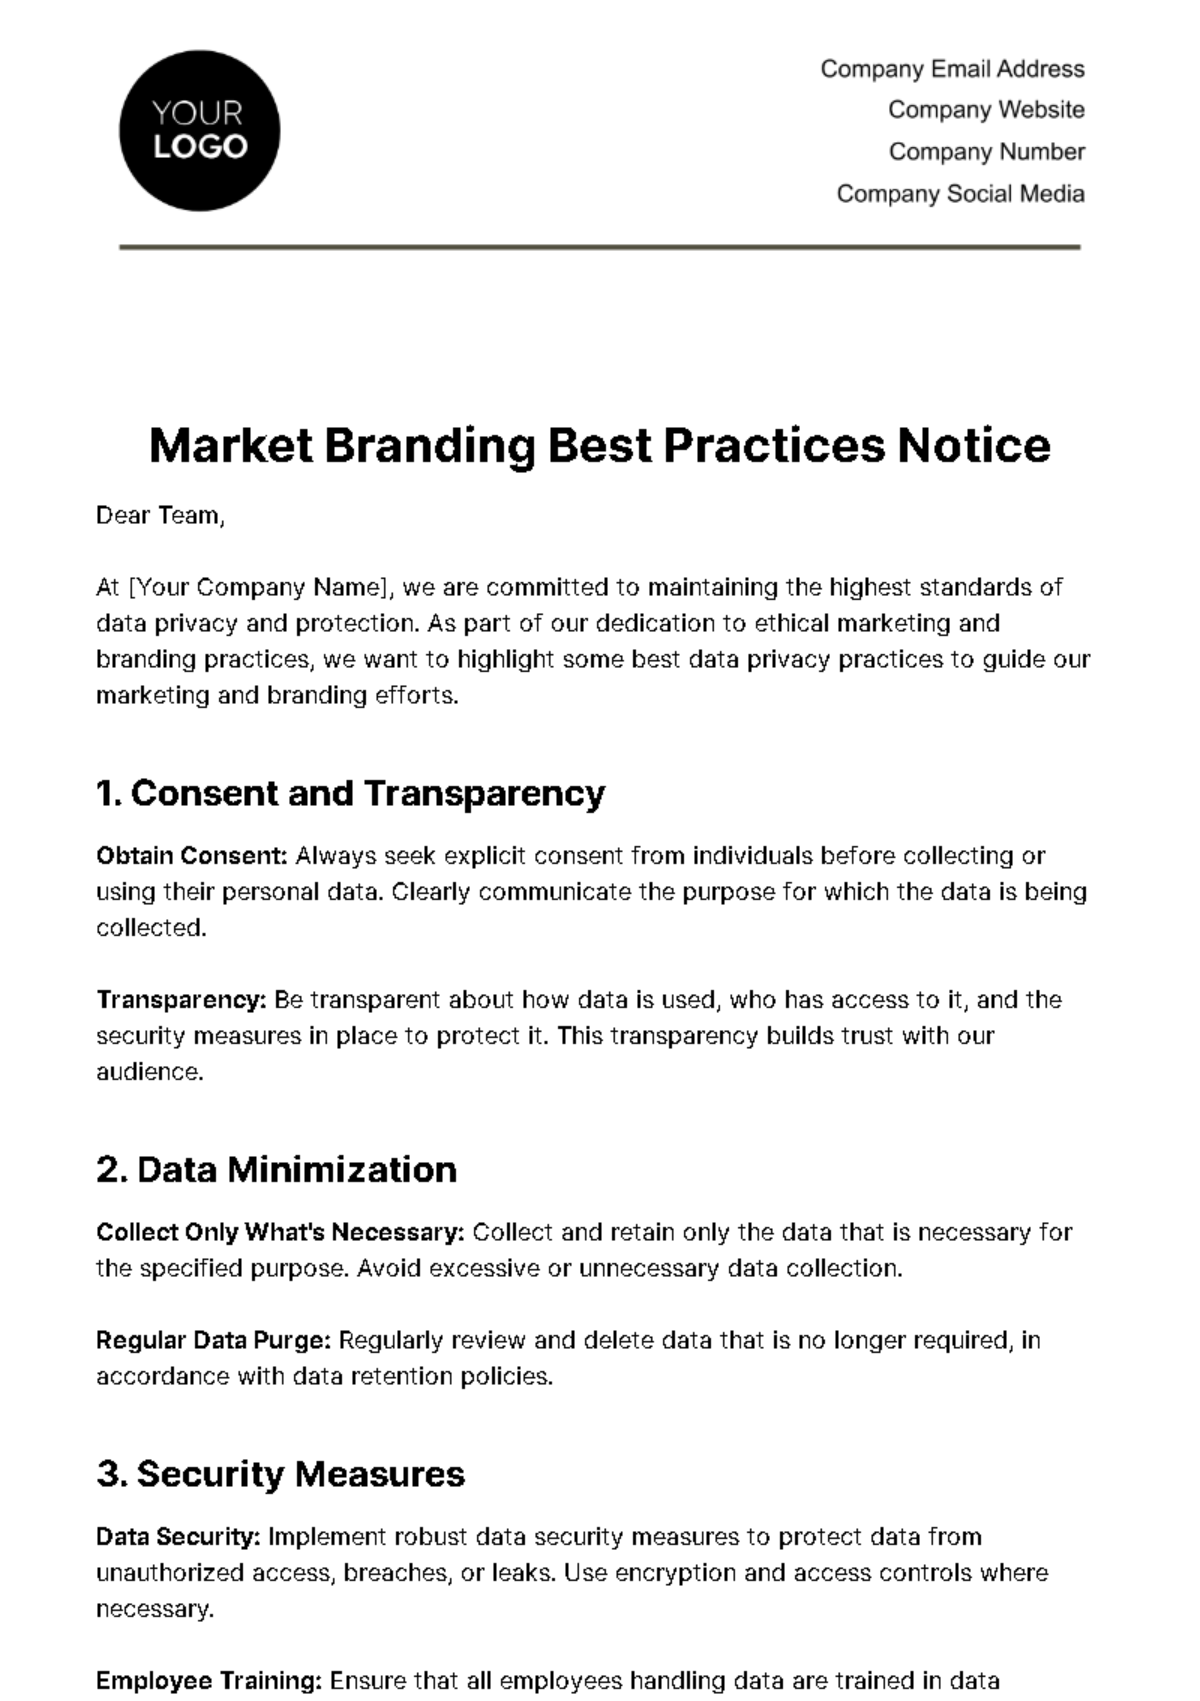 Marketing Branding Best Practices Notice Template